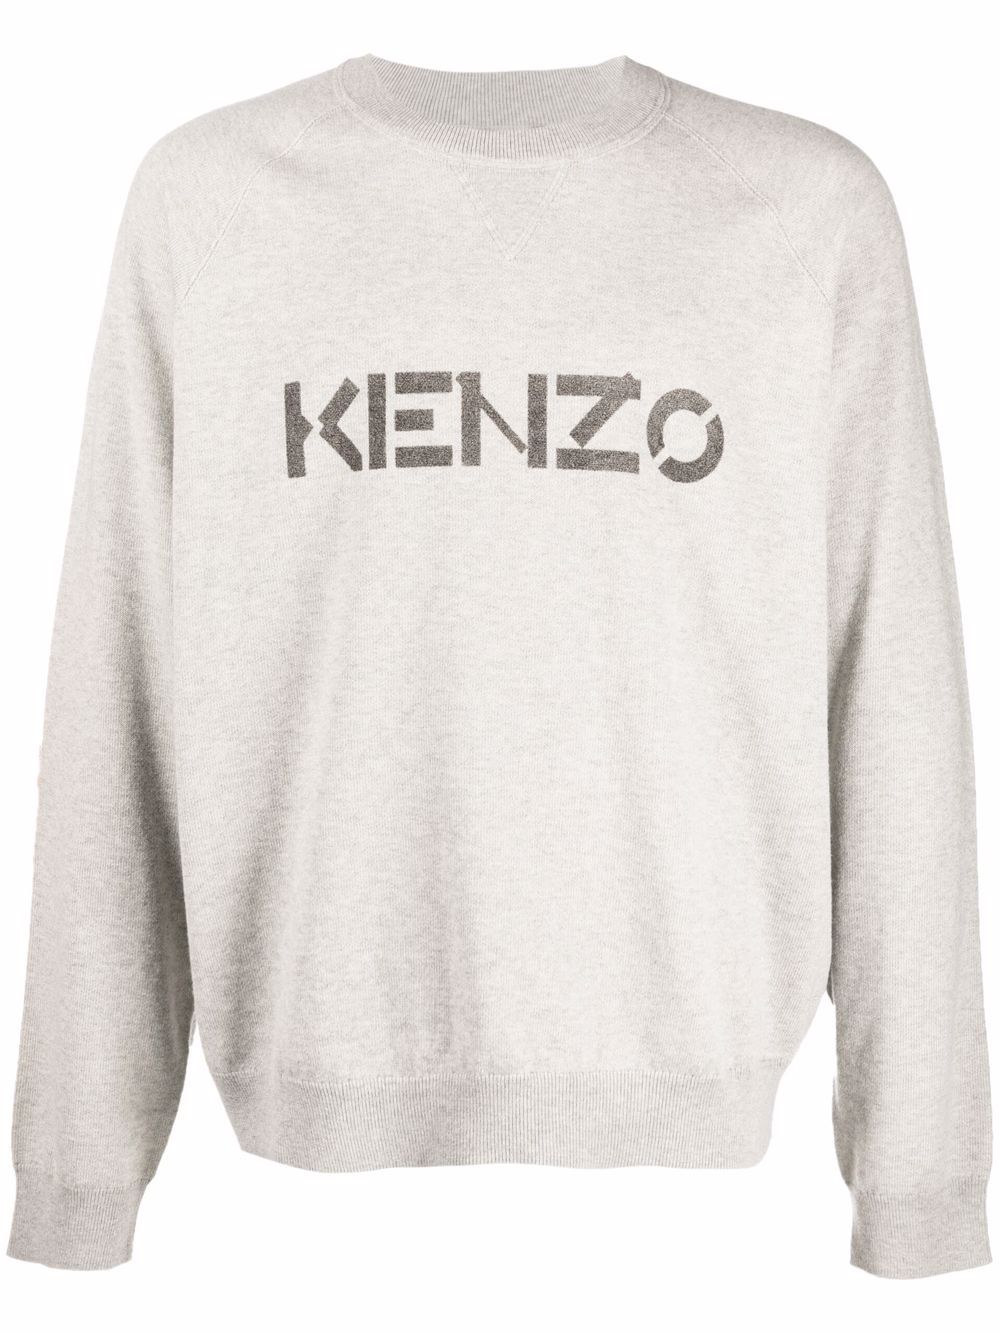 Kenzo logo crew neck jumper - 93 GREY von Kenzo